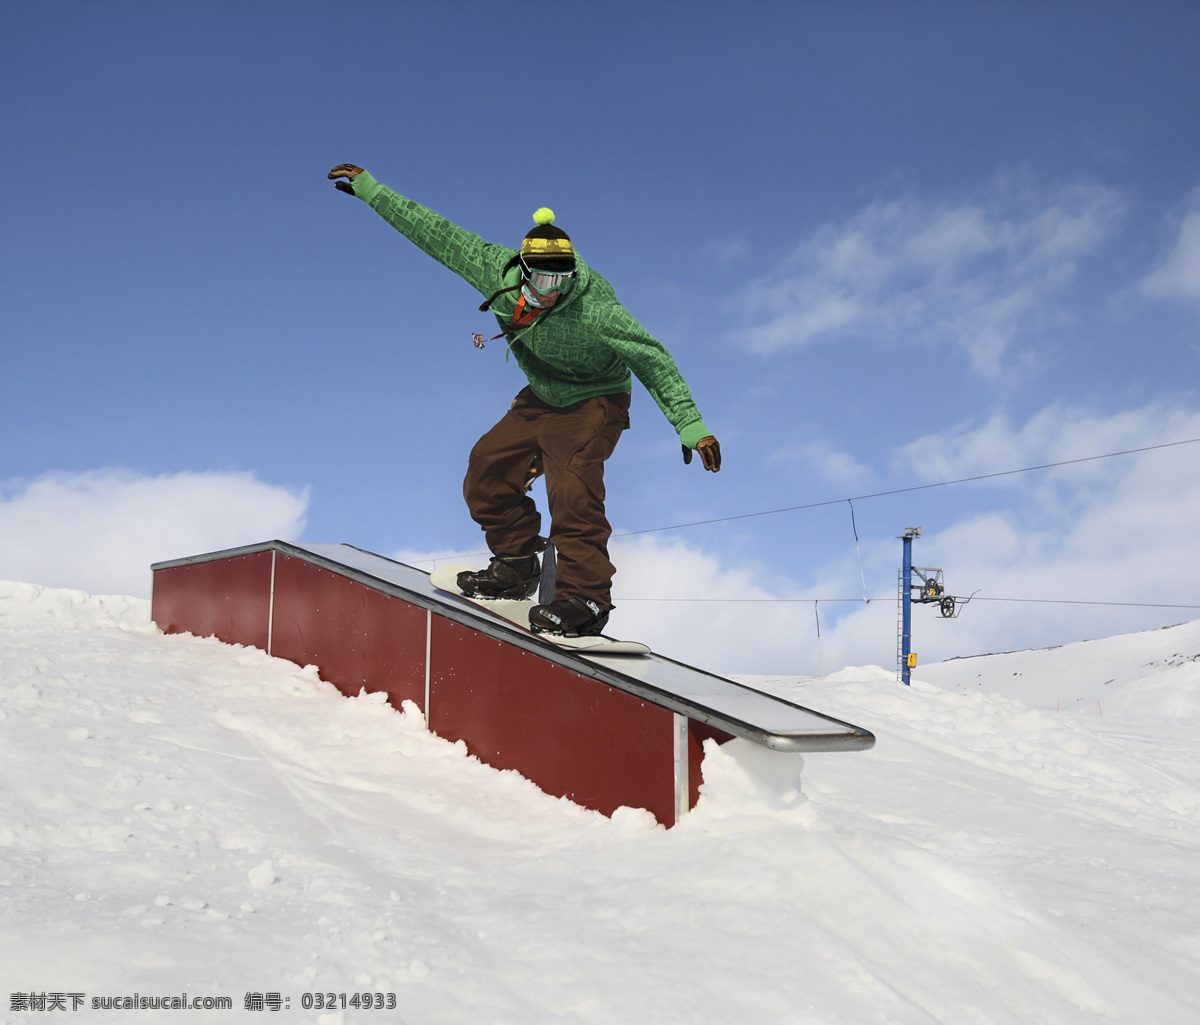 滑雪 男人 滑雪运动员 滑雪场风景 滑雪公园风景 雪地风景 美丽雪景 滑雪图片 生活百科